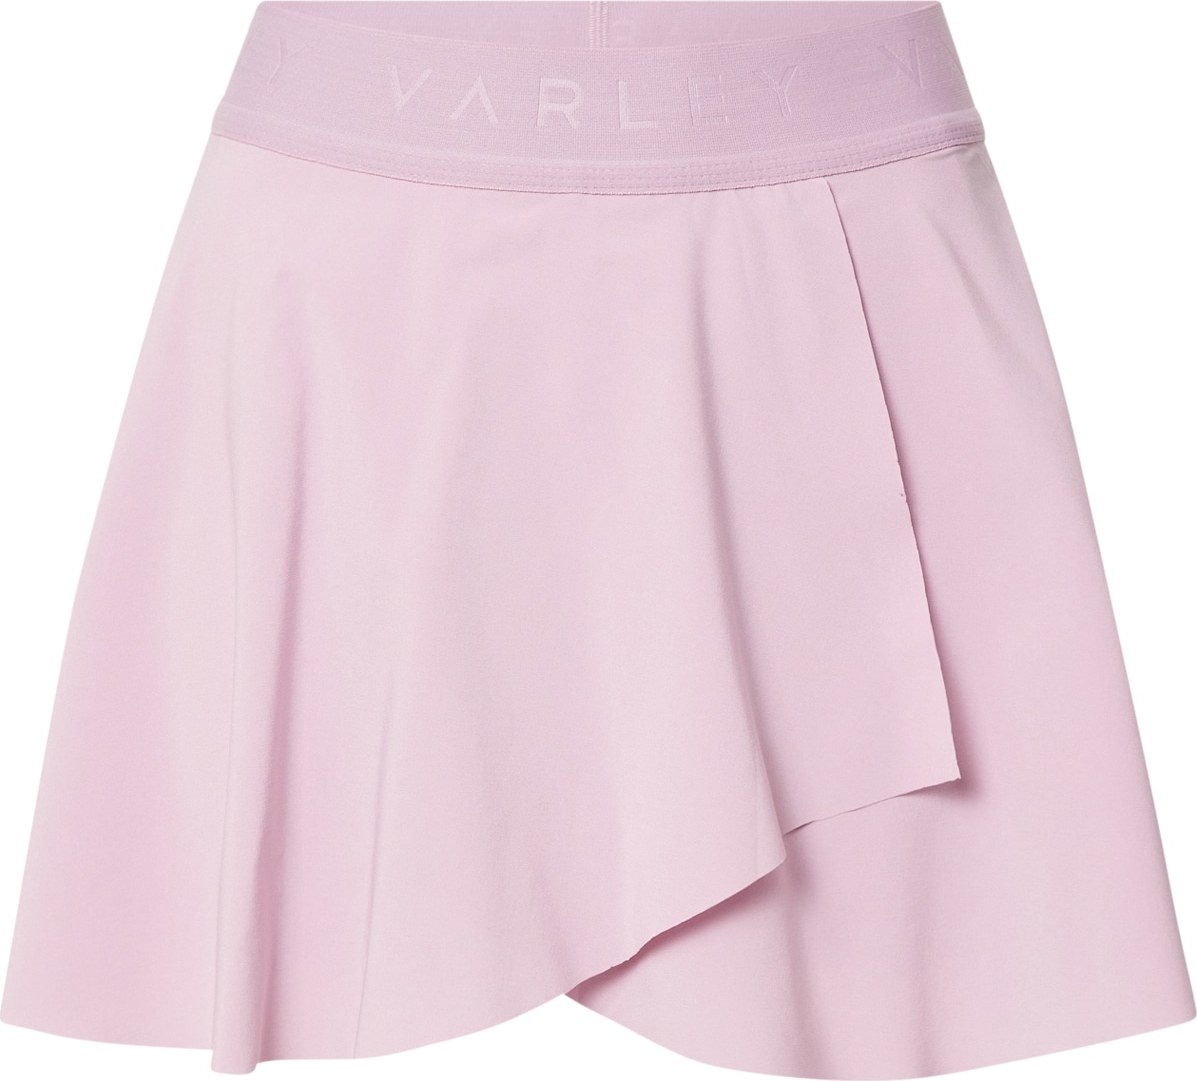 Varley Sportovní sukně 'Rivera' pastelová fialová